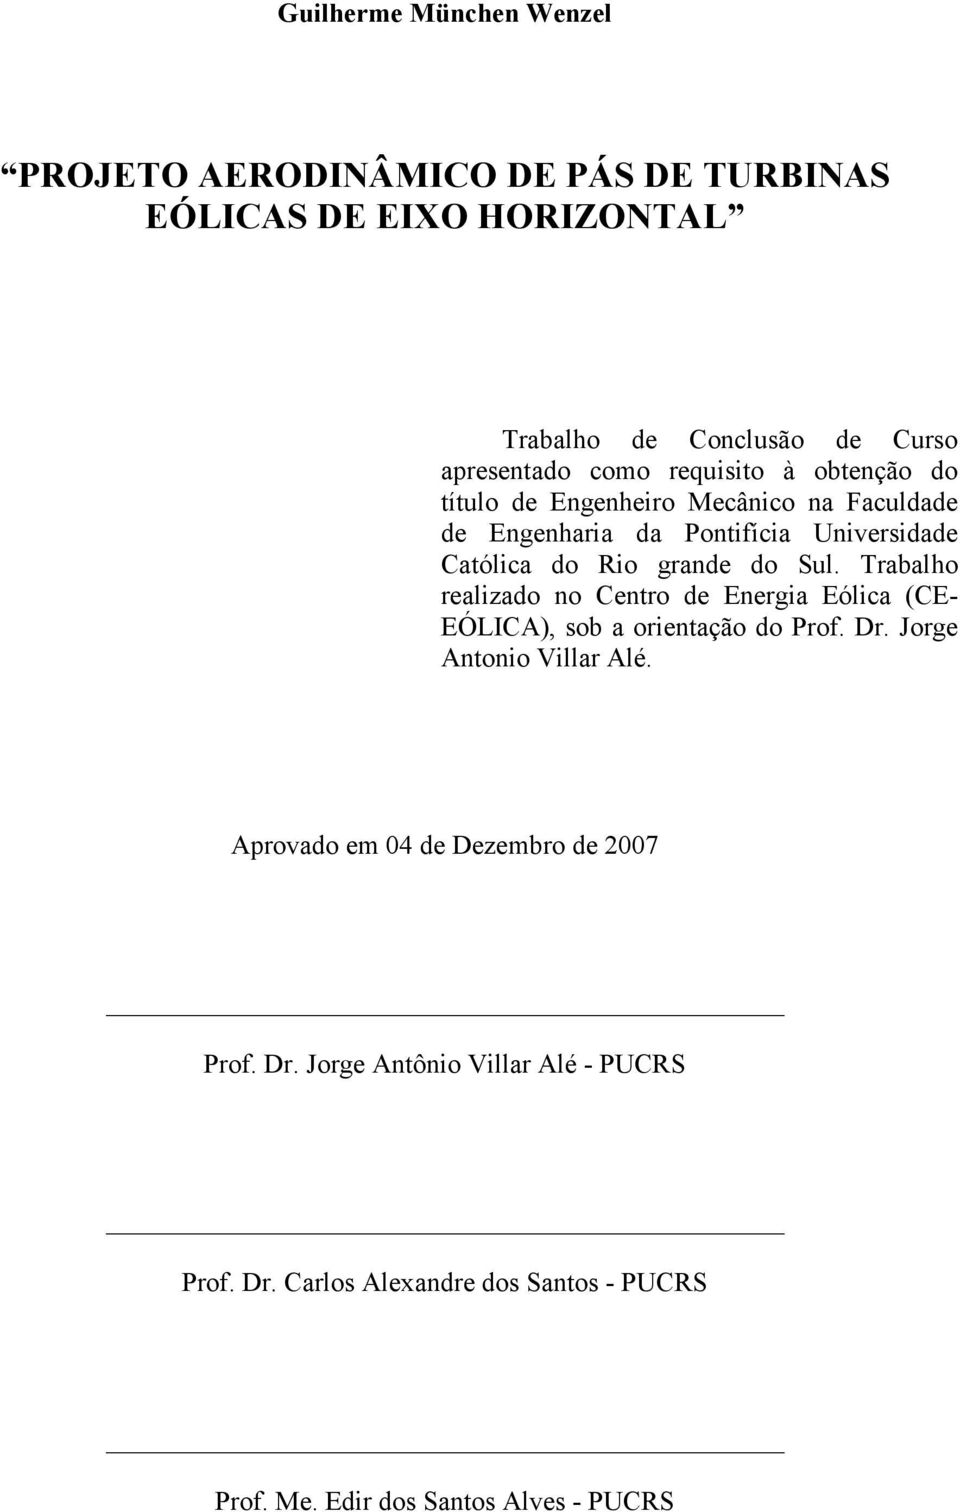 Trabalho realizado no Centro de Energia Eólica (CE- EÓLICA), sob a orientação do Prof. Dr. Jorge Antonio Villar Alé.